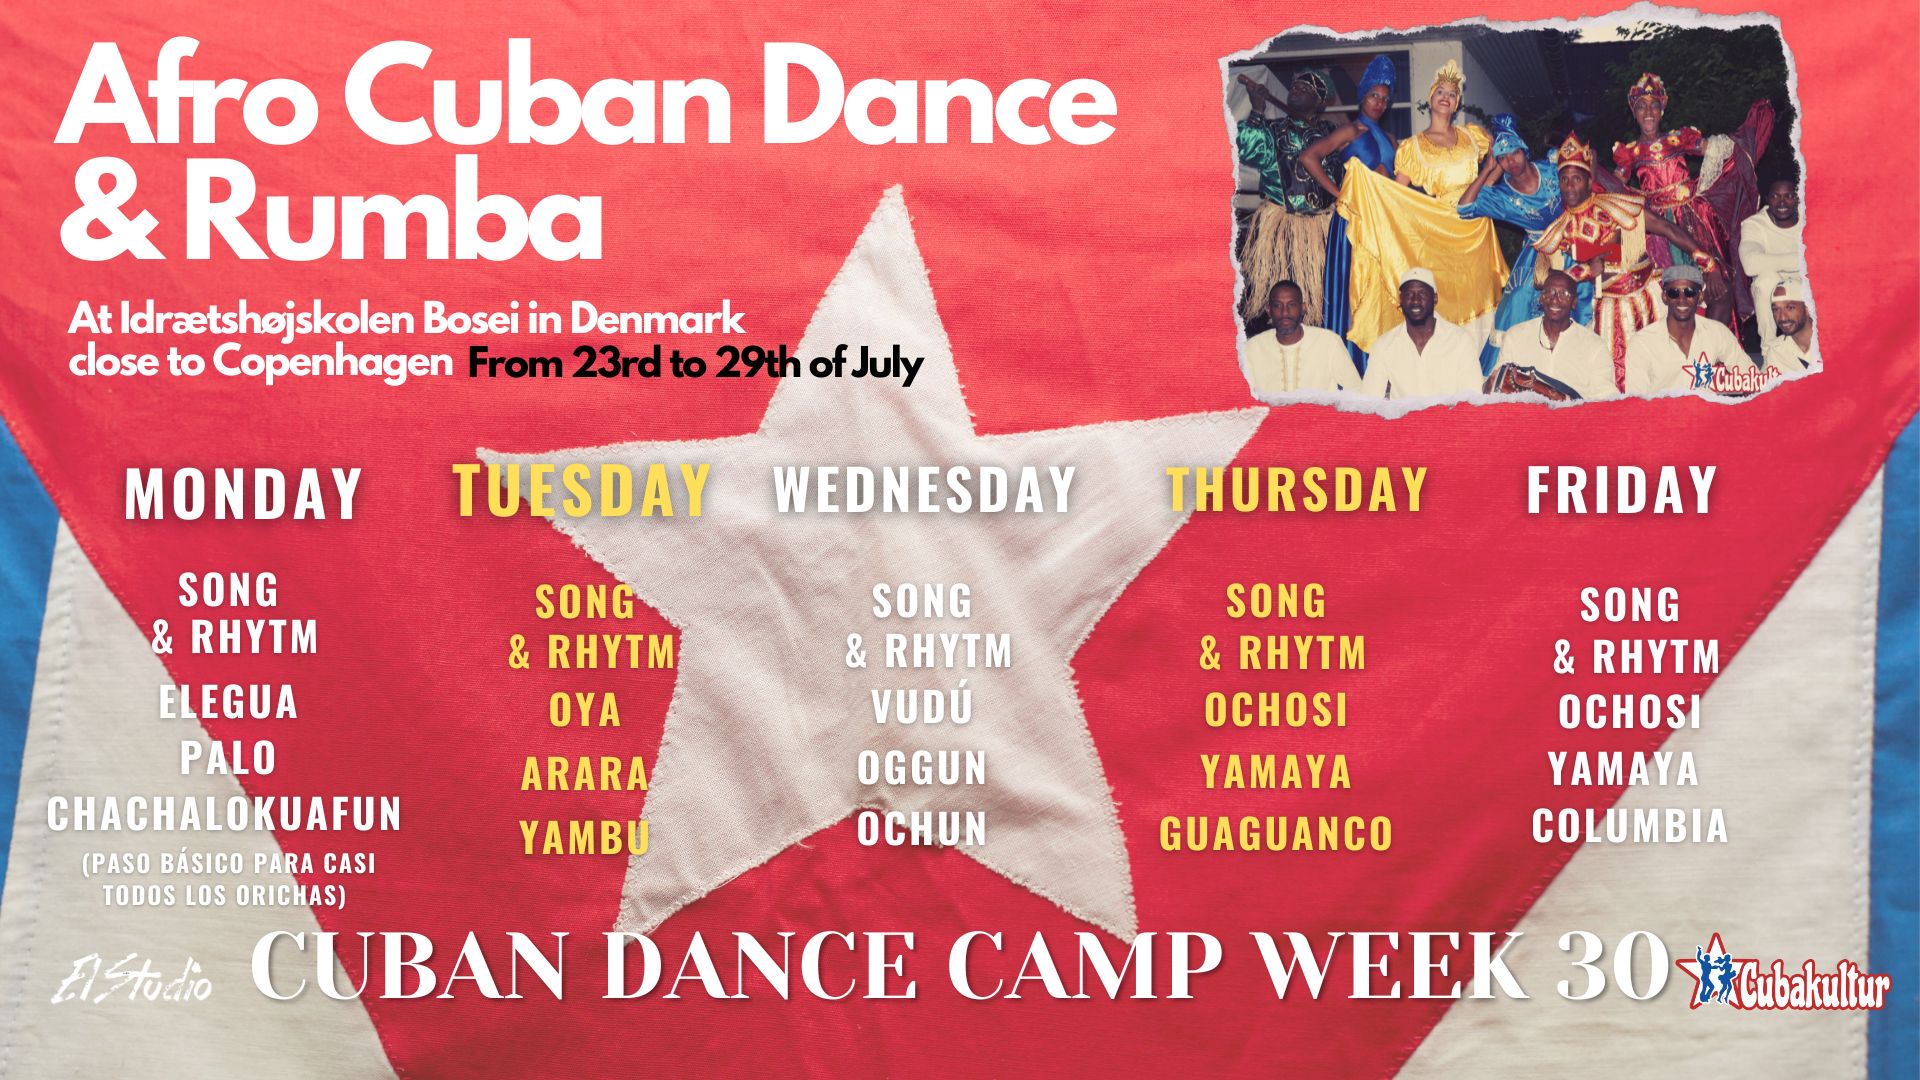 afro cuban dance & rumba